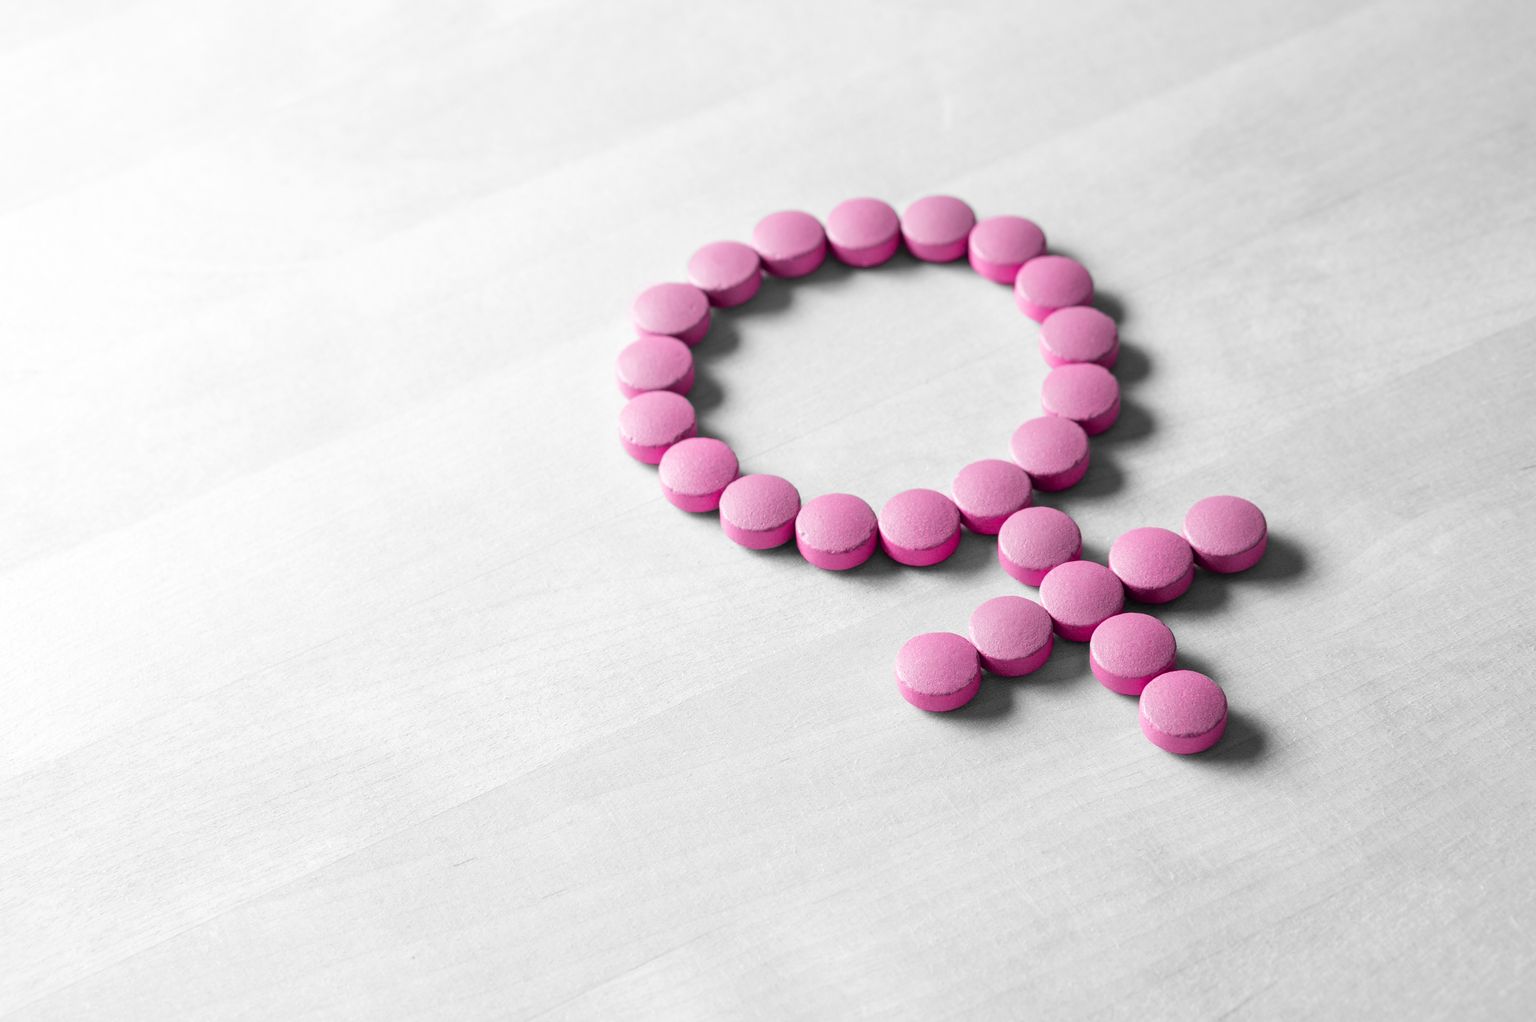 Simbolo del sesso fatto di pillole o compresse rosa rosse su un tavolo di legno.